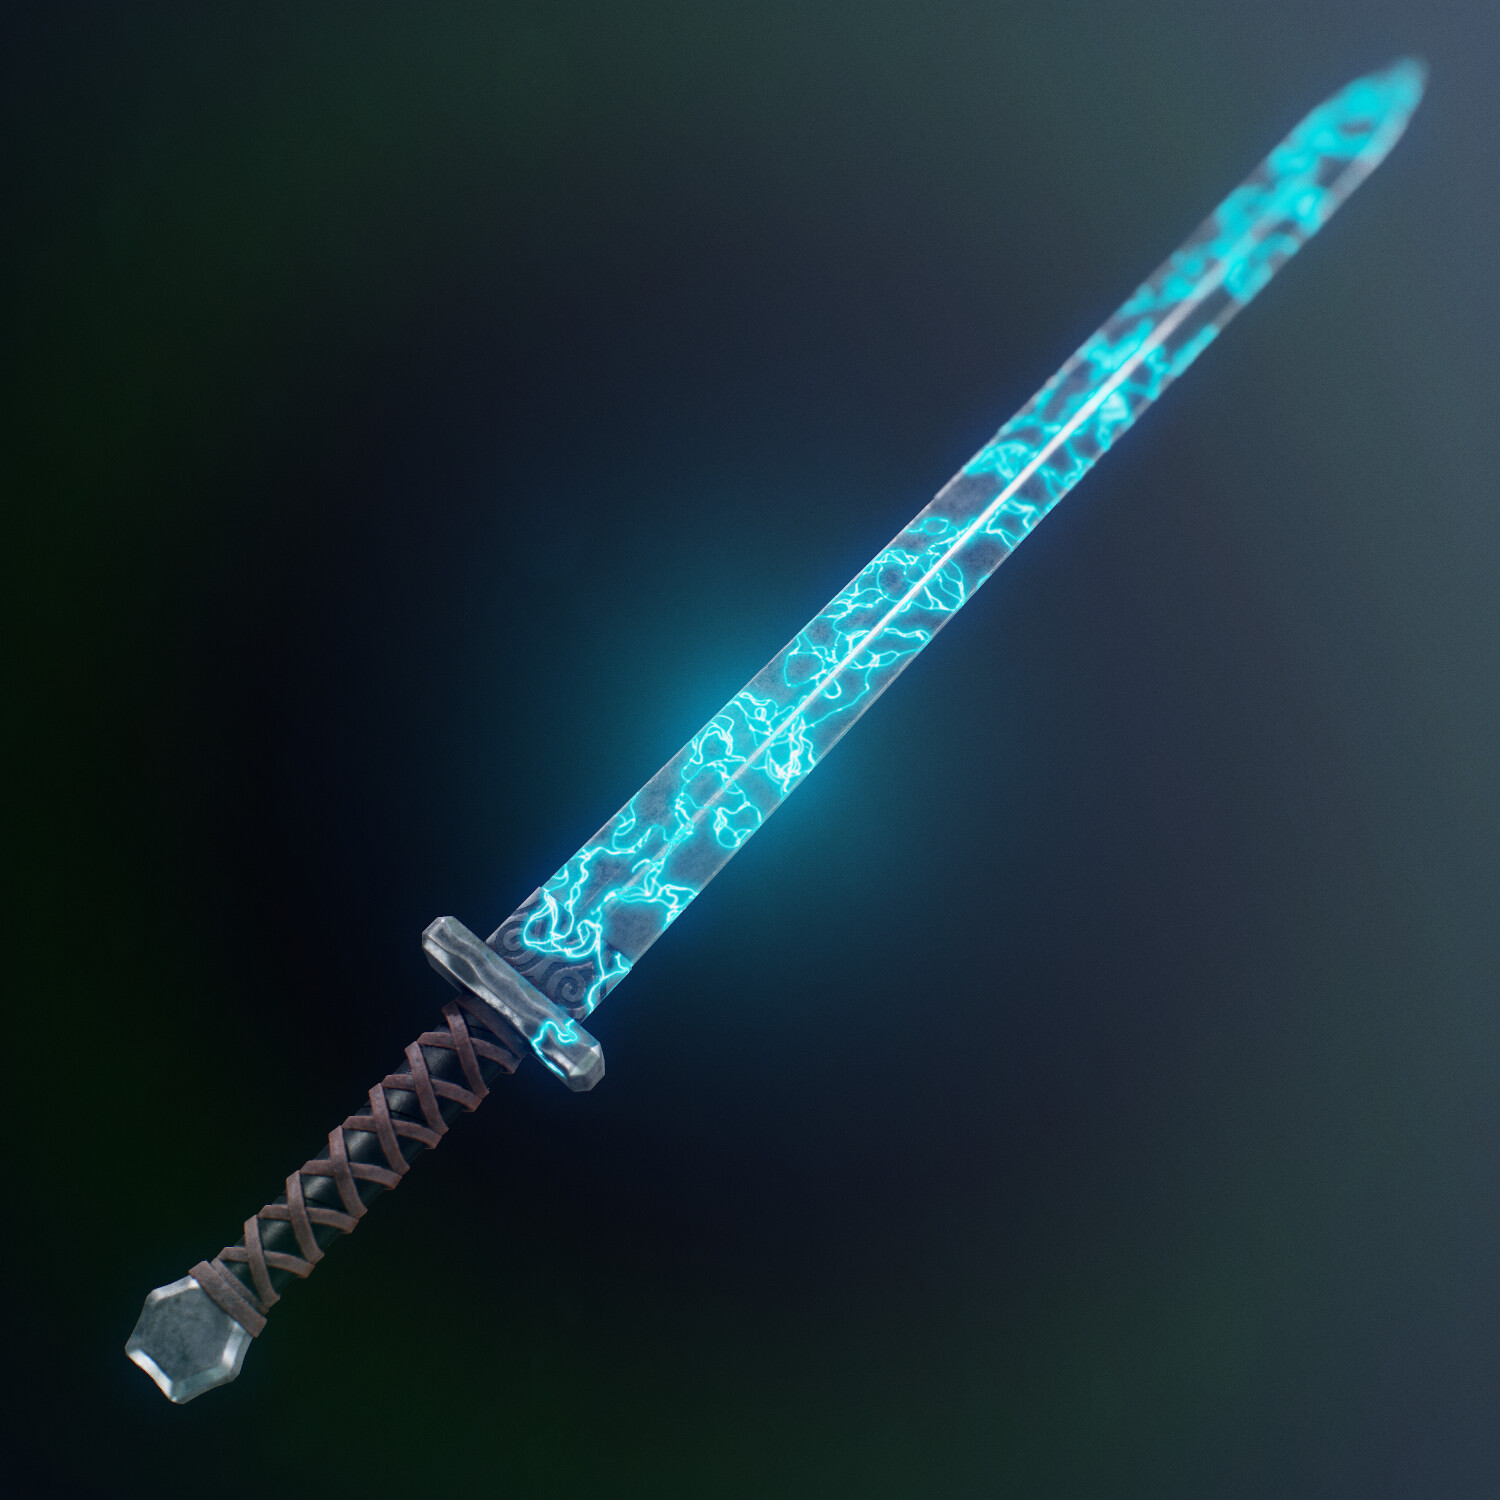 Sword Concept: Light Blade